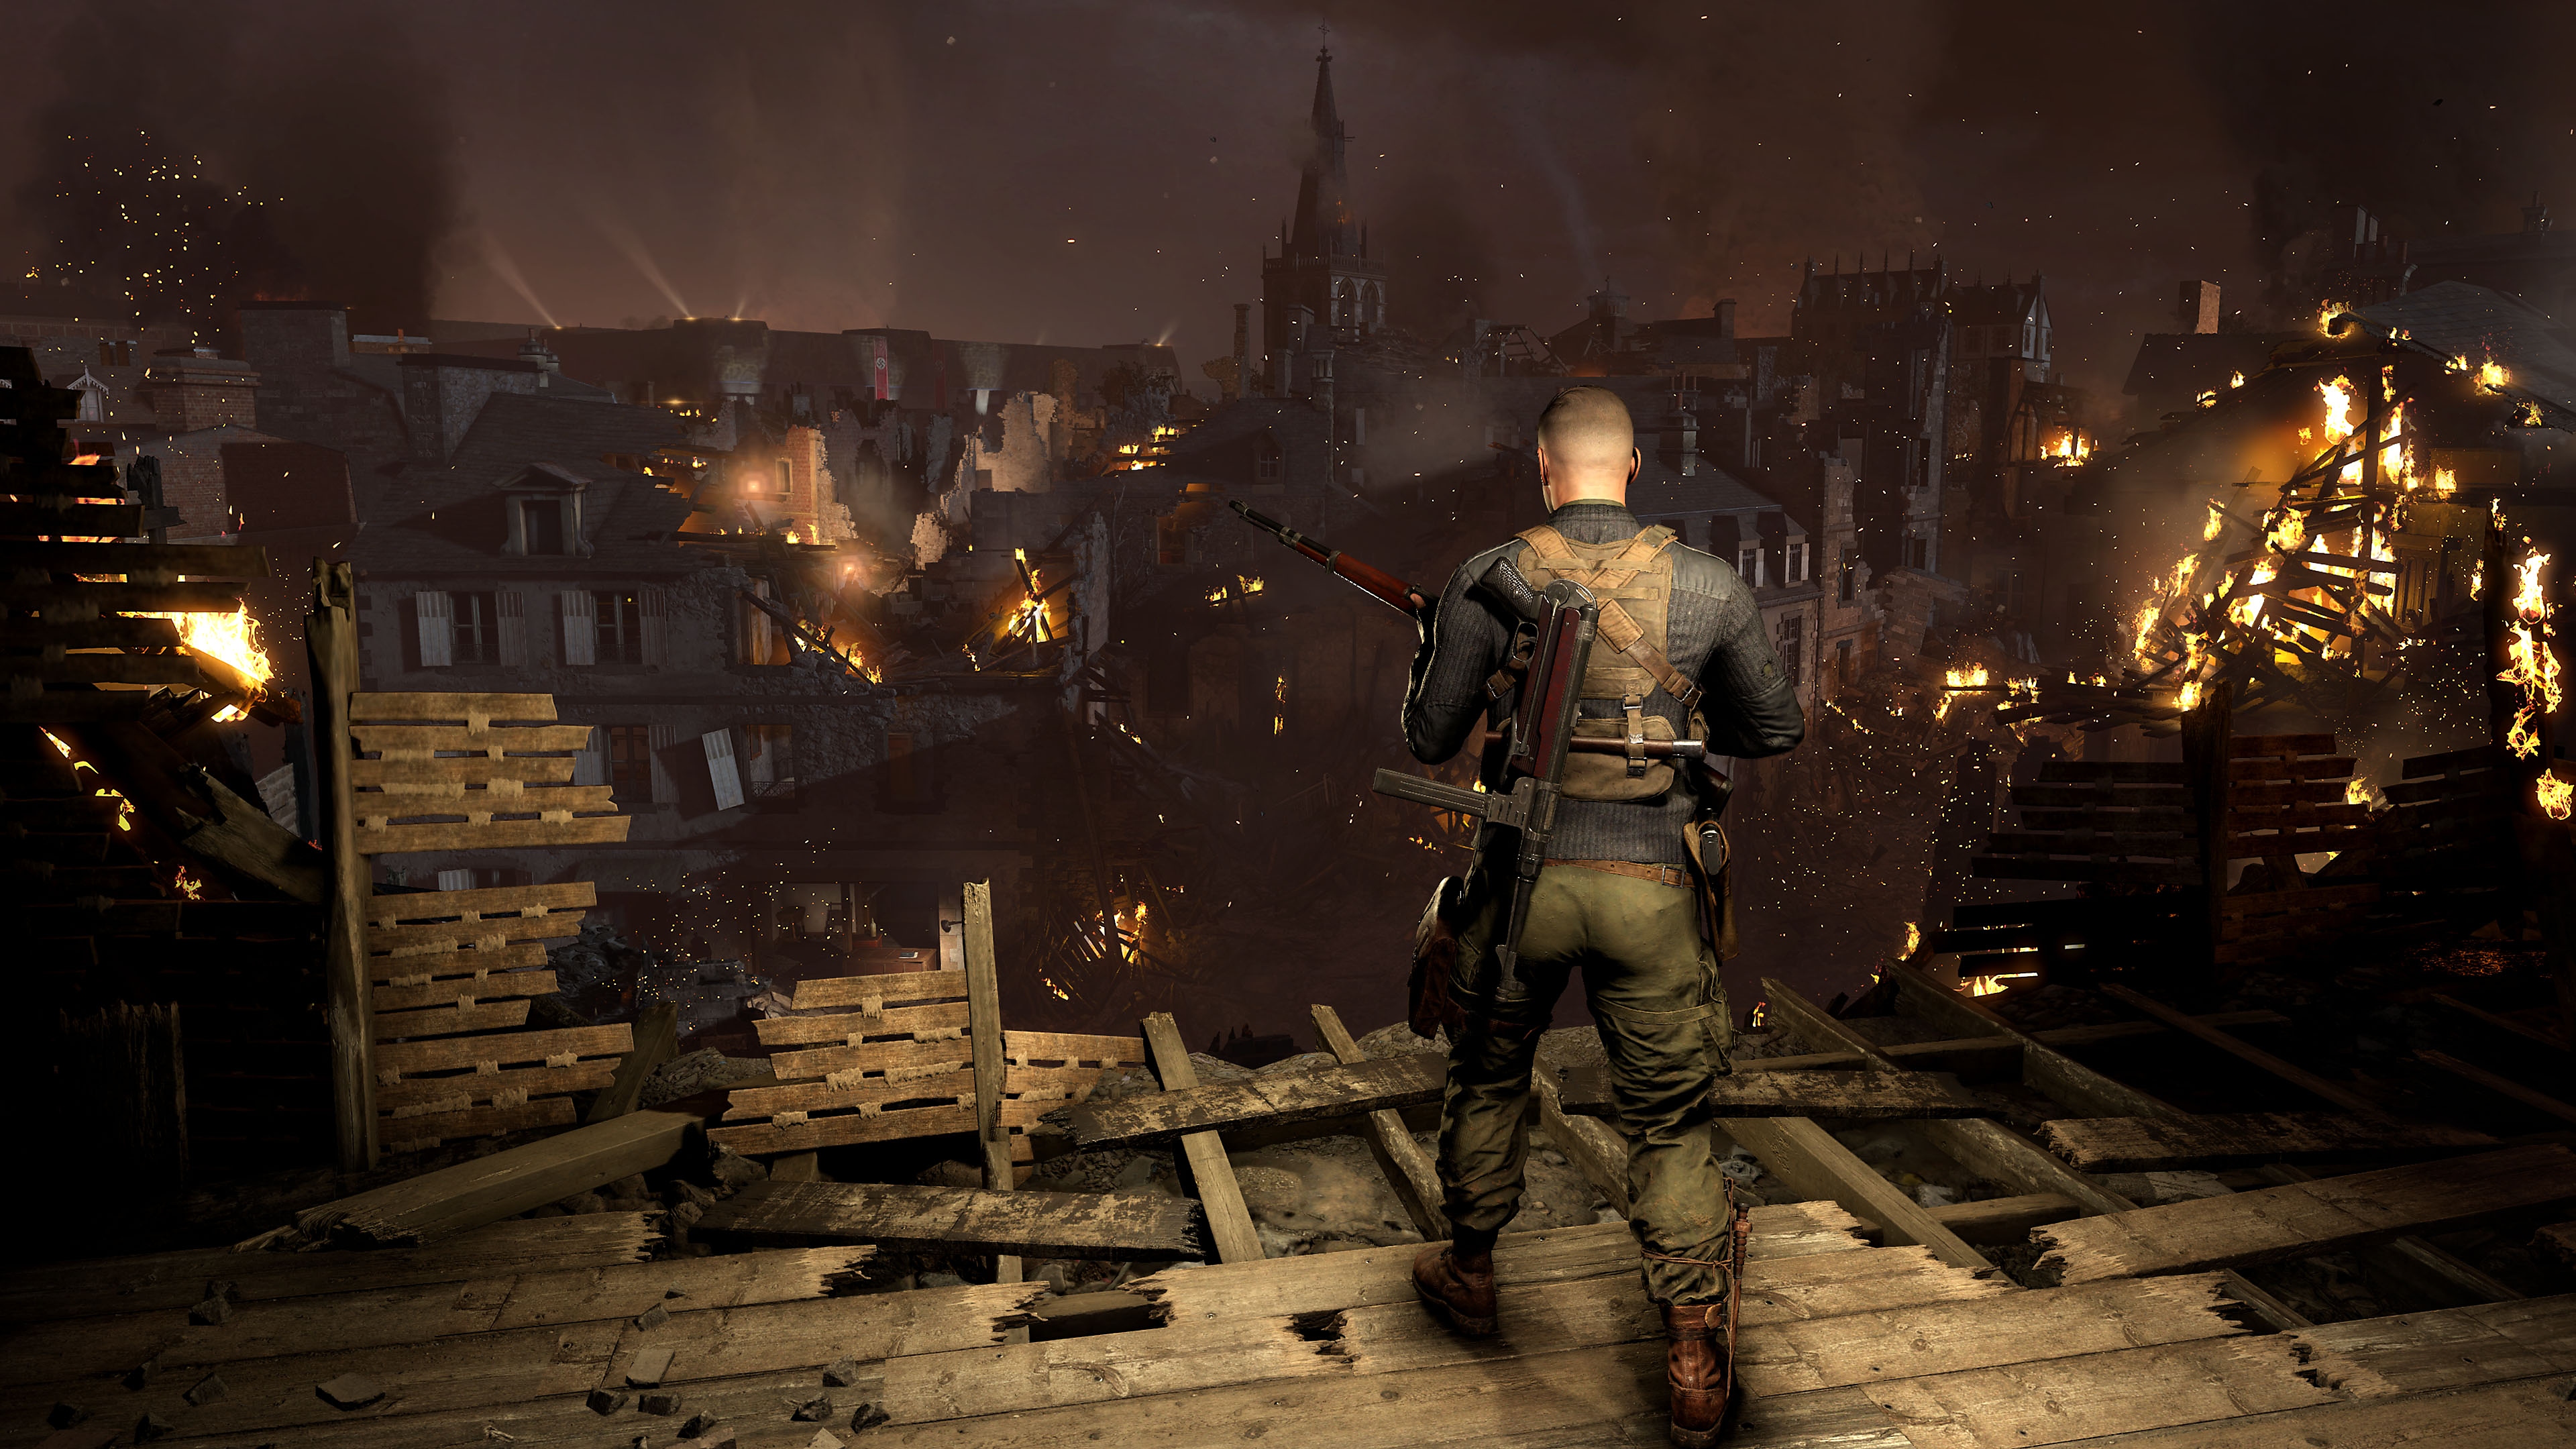 Sniper Elite 5 – kuvakaappaus jossa hahmo katselee kaupunkia, jossa palaa rakennuksia